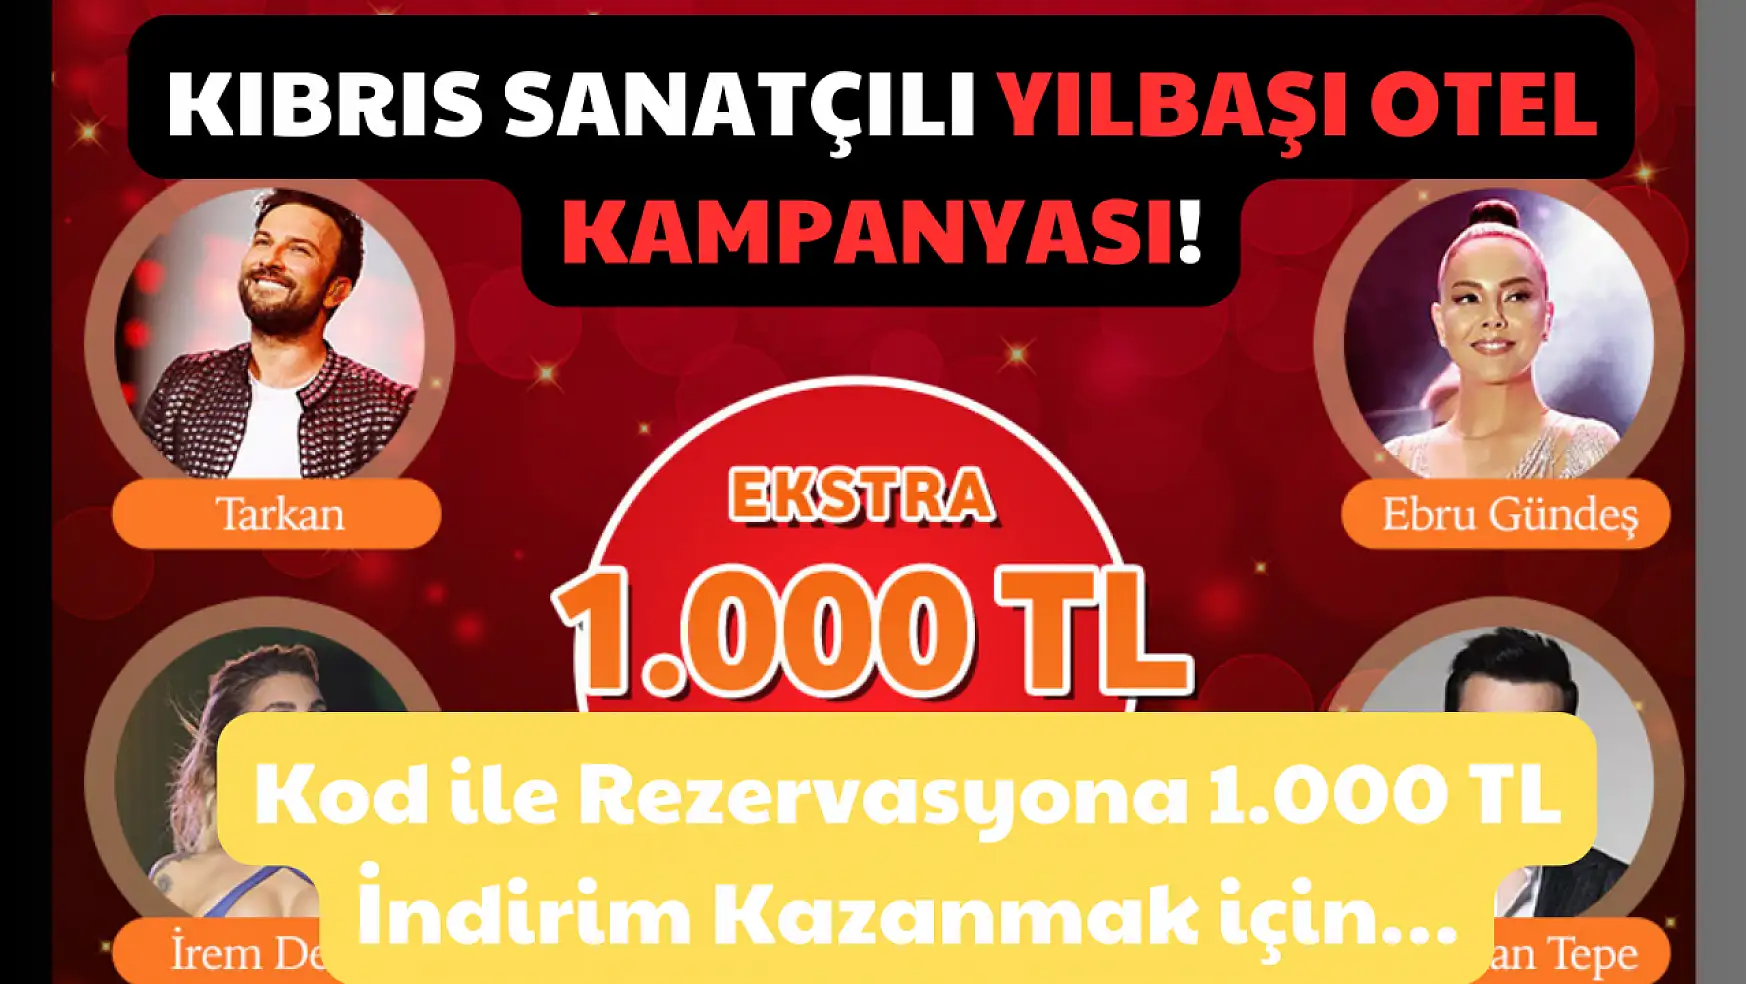 Kıbrıs Sanatçılı Yılbaşı Otel Kampanyası: Kod ile Rezervasyona 1.000 TL İndirim Kazanmak için!